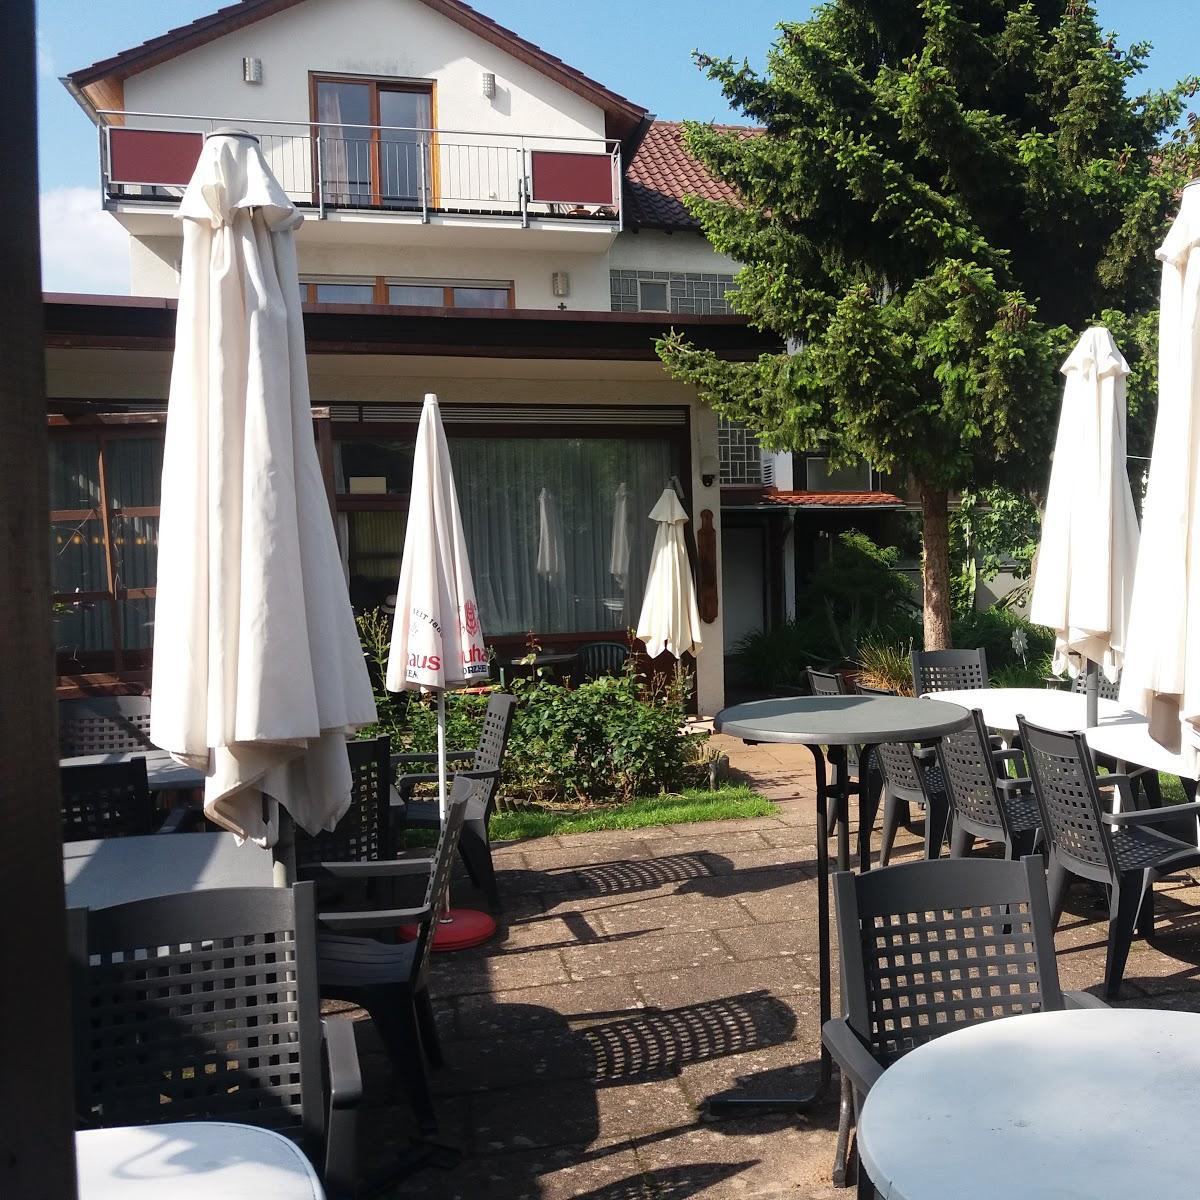 Restaurant "Hirsch" in  Neuhausen